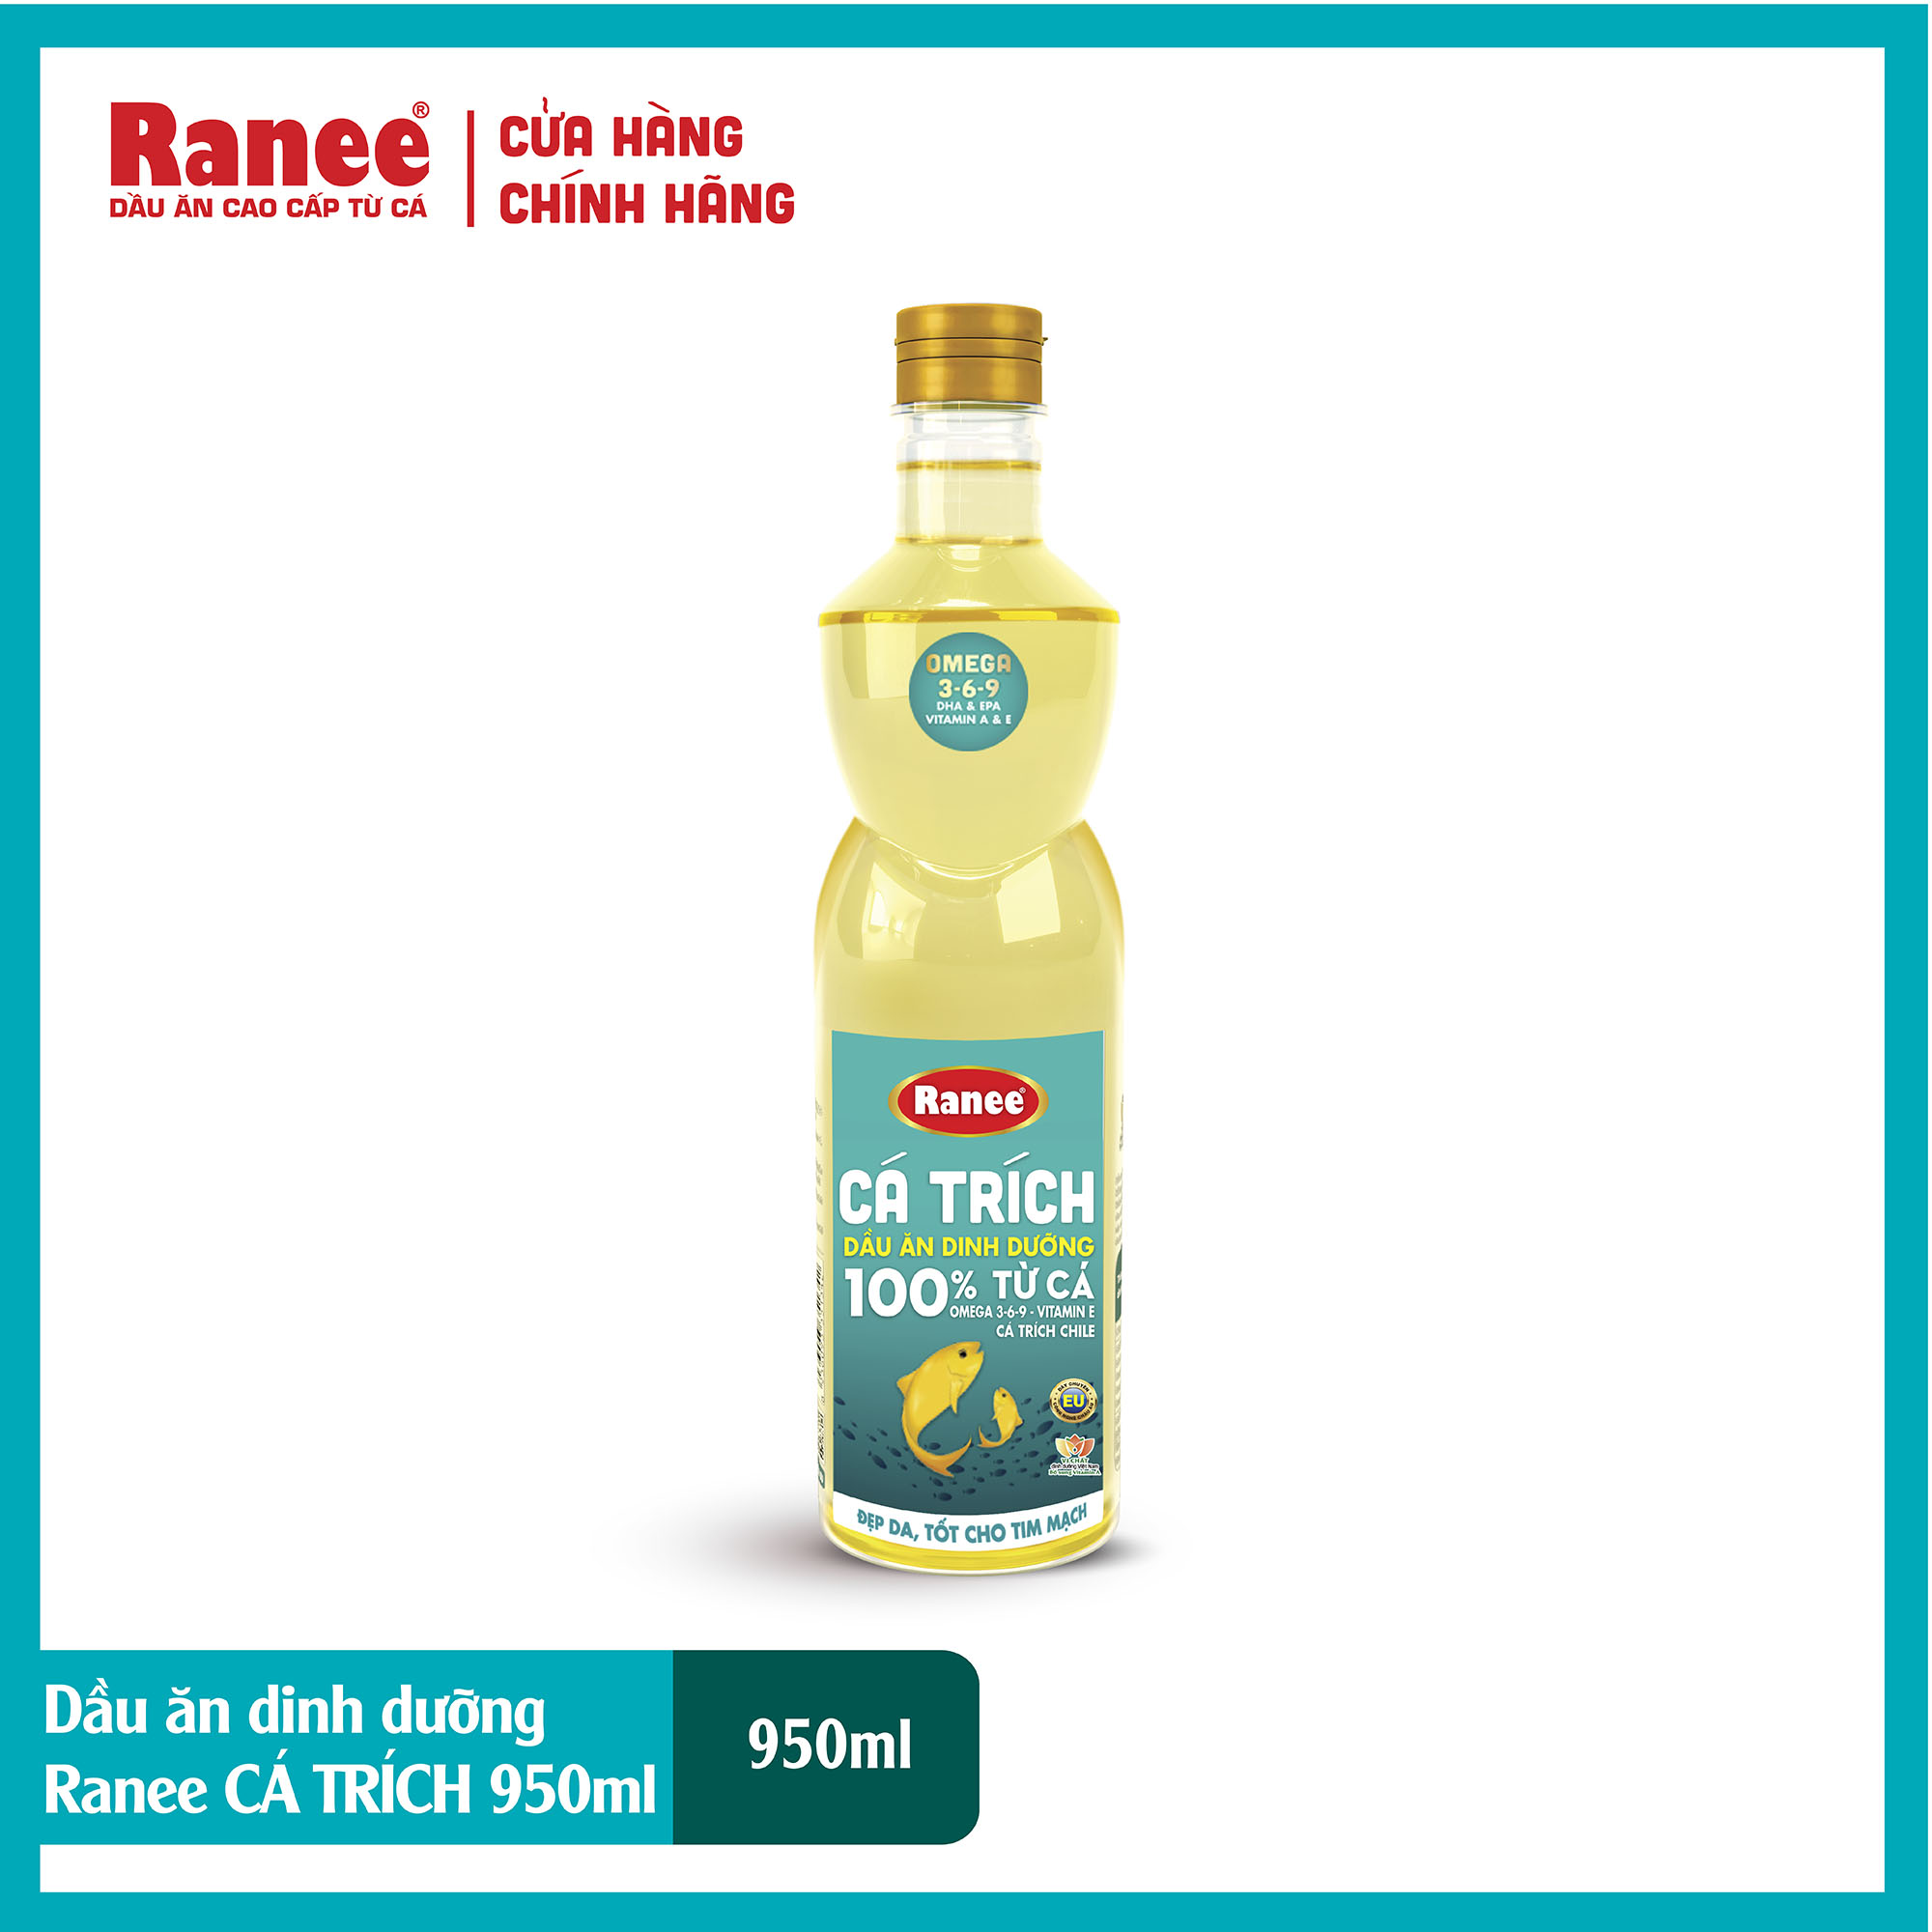 Dầu ăn Ranee CÁ TRÍCH 950ml